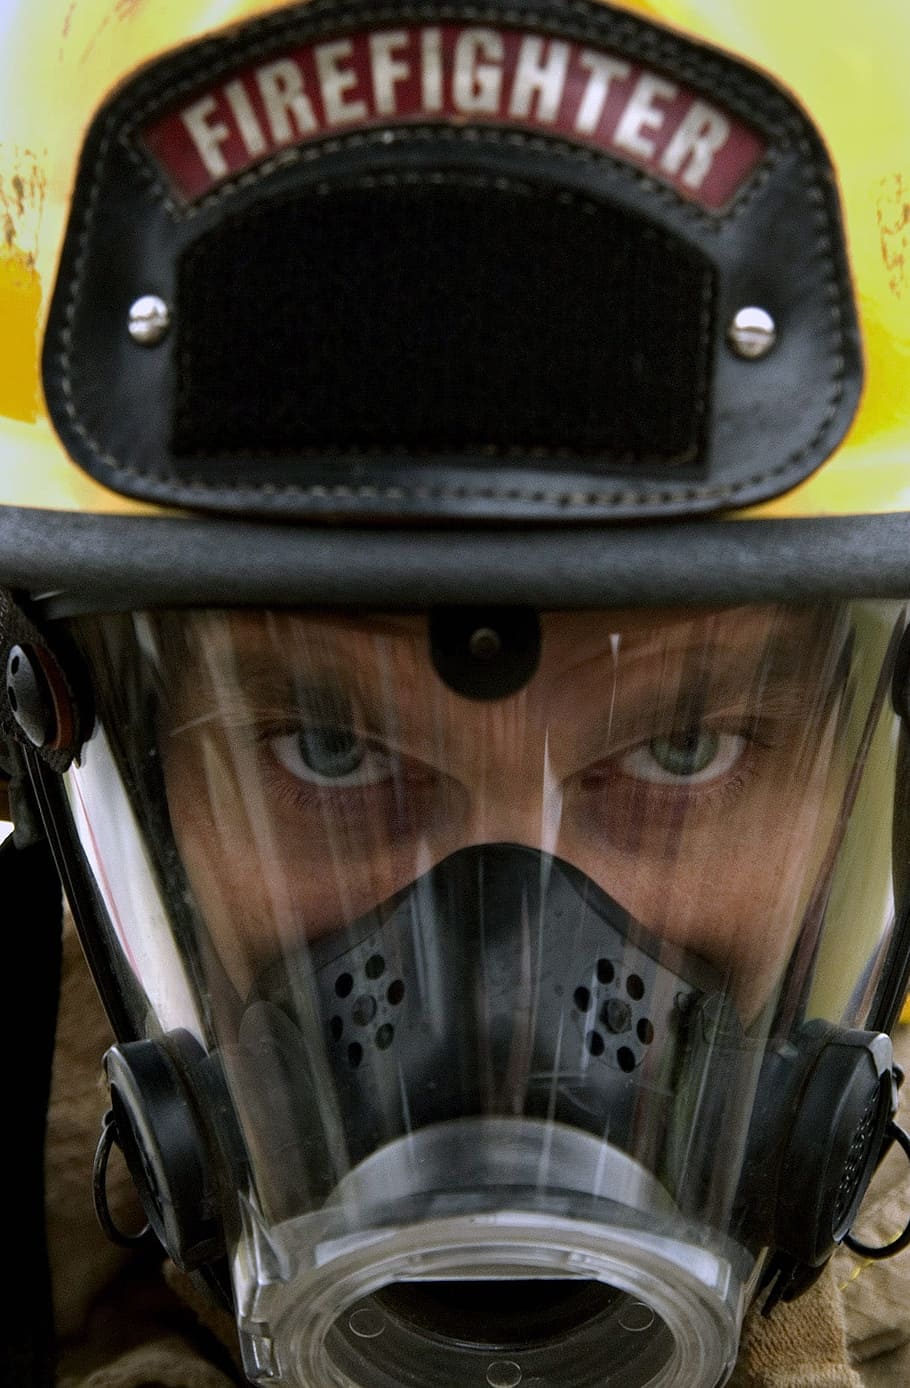 negro, gris, casco de bombero, bombero, casco, protección, uniforme, traje, equipo, seguridad